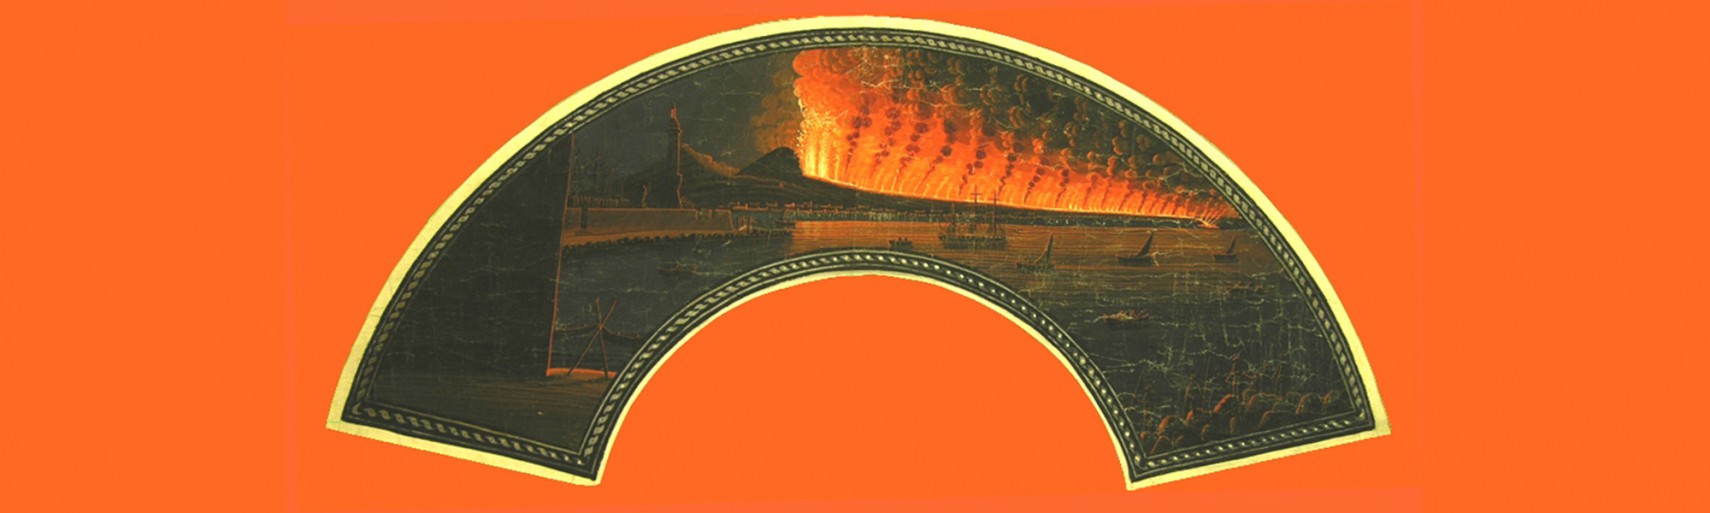 Napoli-eruzione 1792-Faro la lanterna